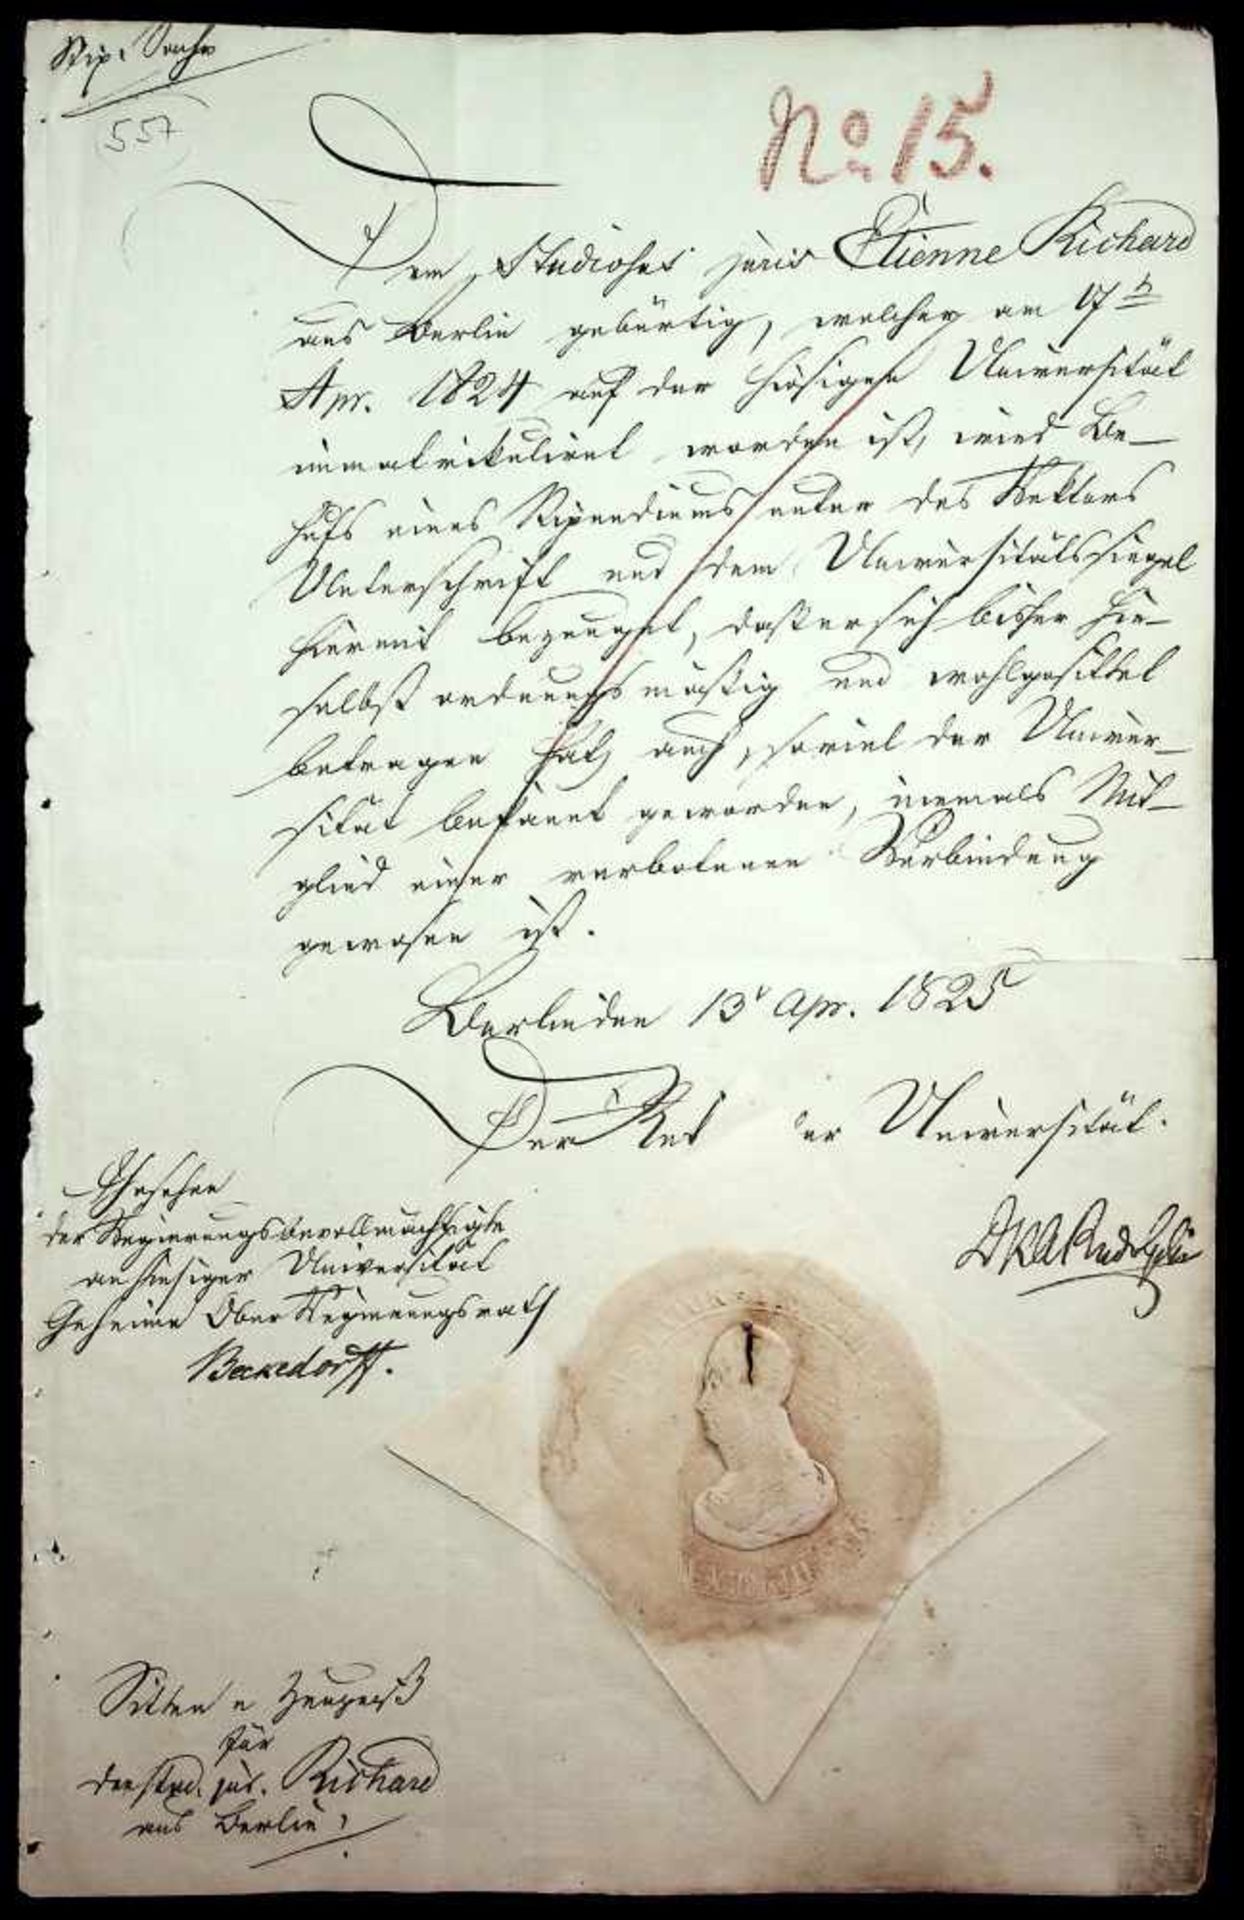 Rudolphi, Karl Asmund,Urkunde m. U. Bln. 13.IV.1825. Fol. 1 S. mitblindgepr. Siegel.Sittenzeugnis